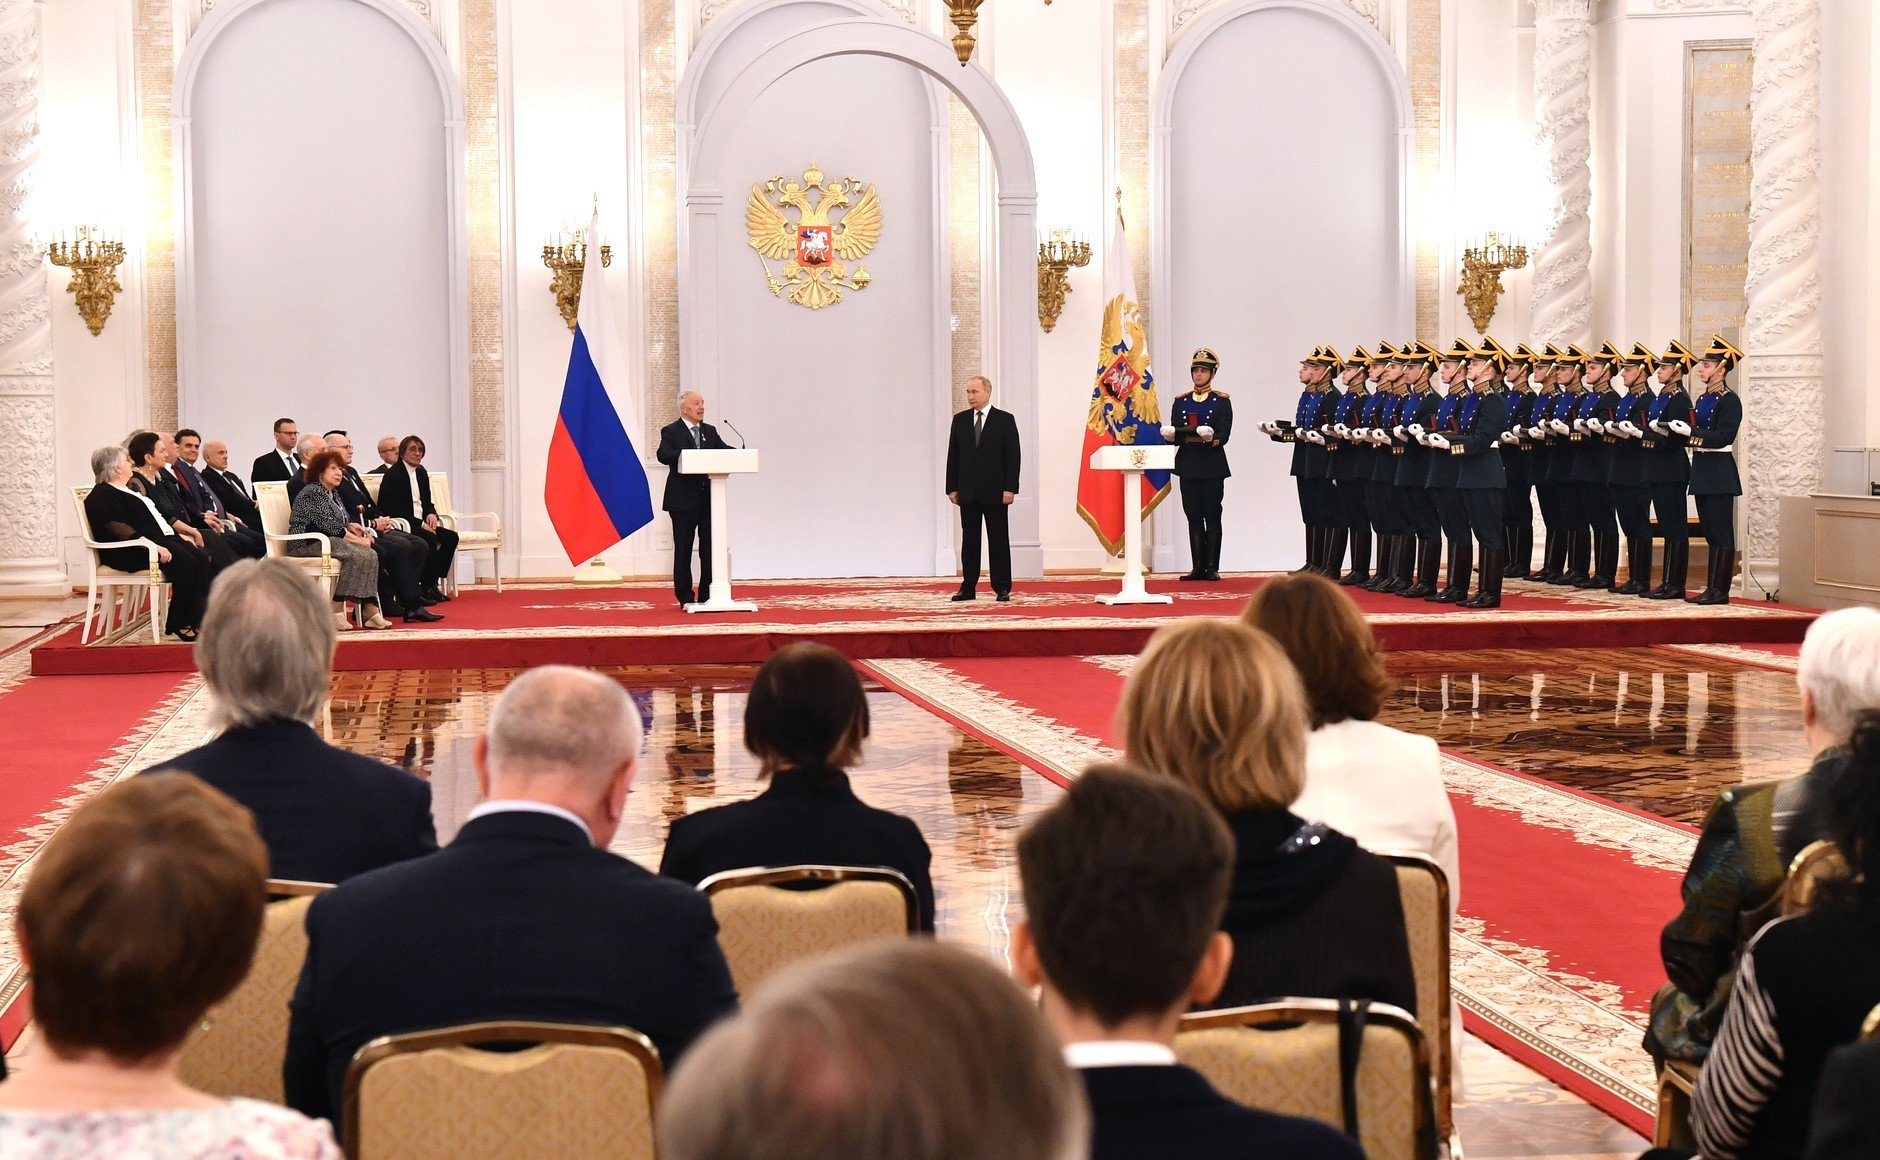 12 июня 2019 г. Георгиевский зал большого кремлёвского дворца награждение герооев.